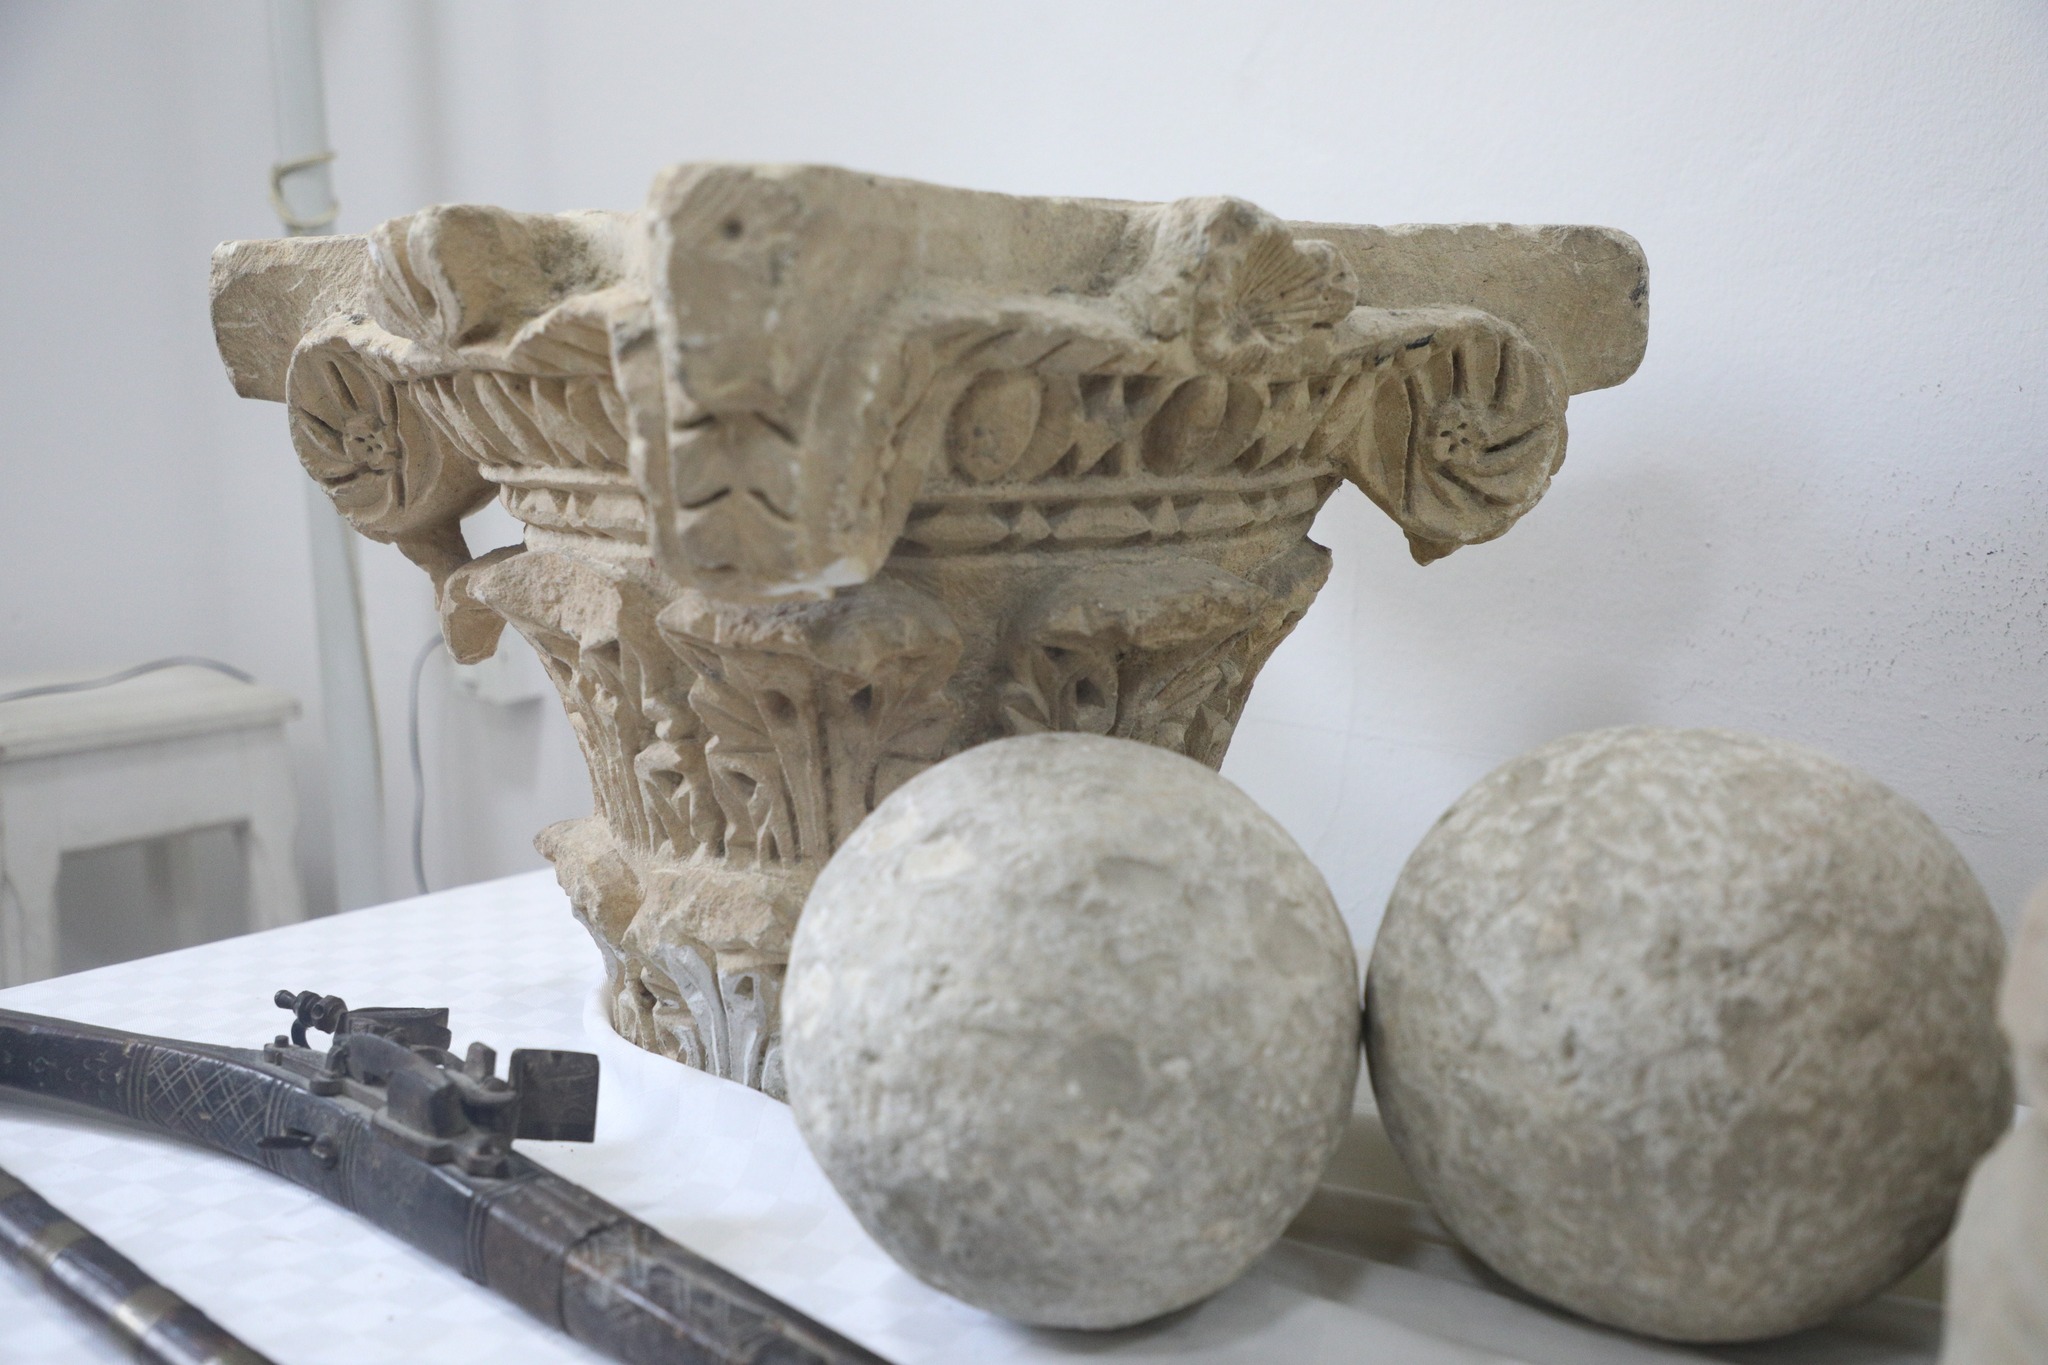 تونس تسترجع مجموعة من القطع الأثرية من فرنسا